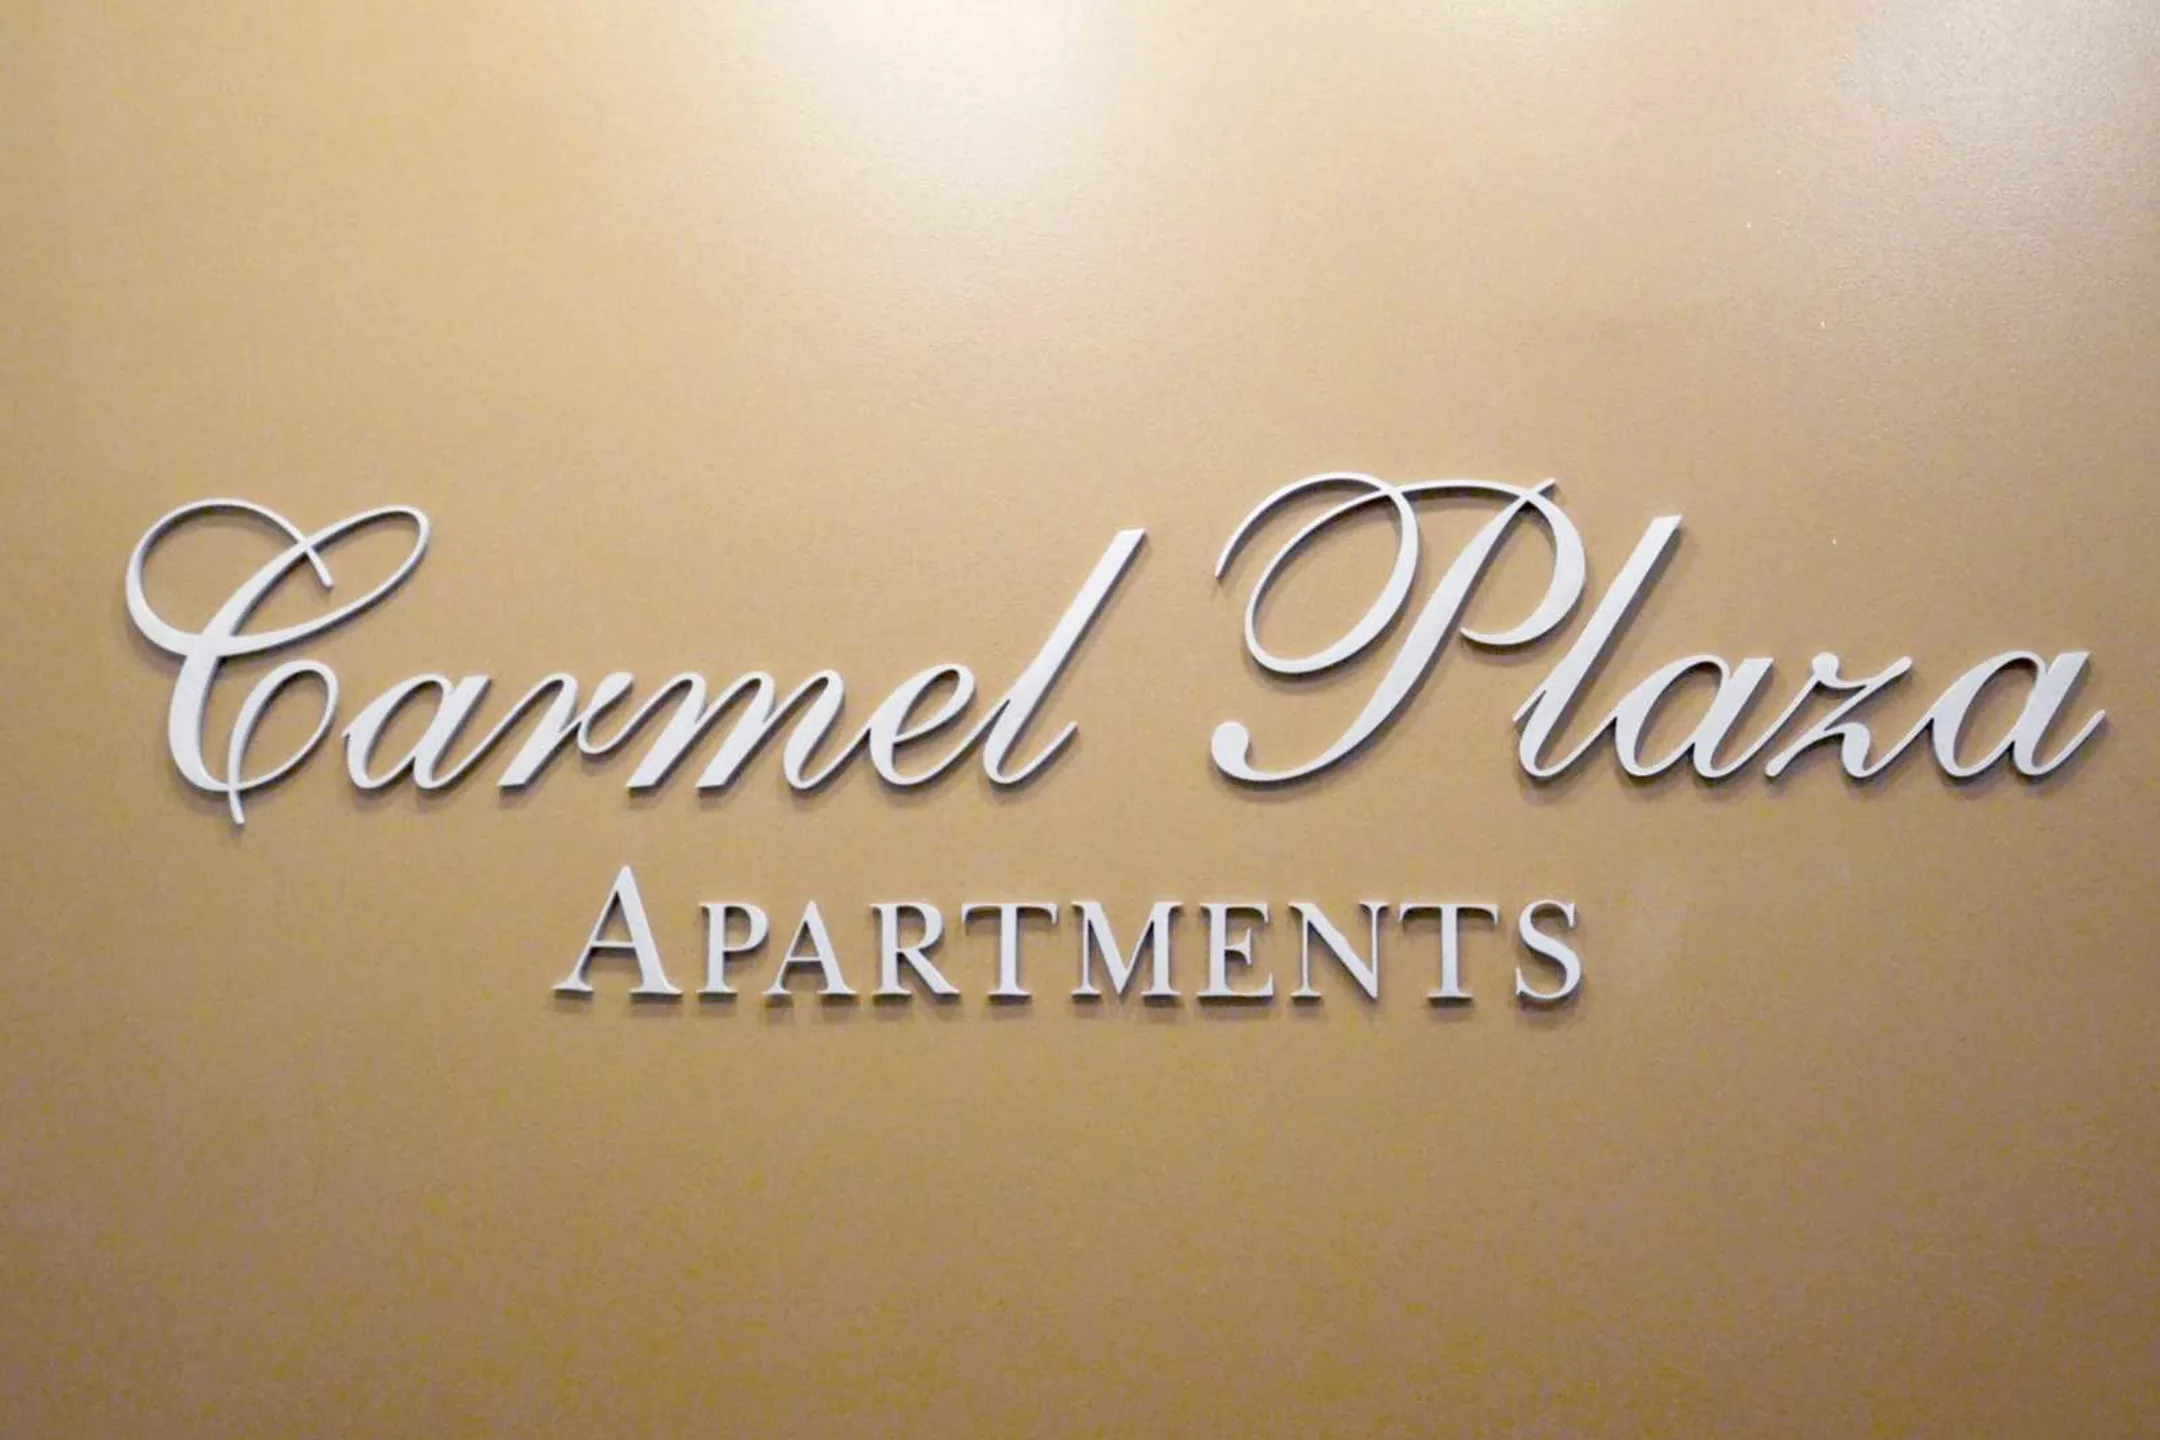 Community Signage - Carmel Plaza Apartments - Washington, DC